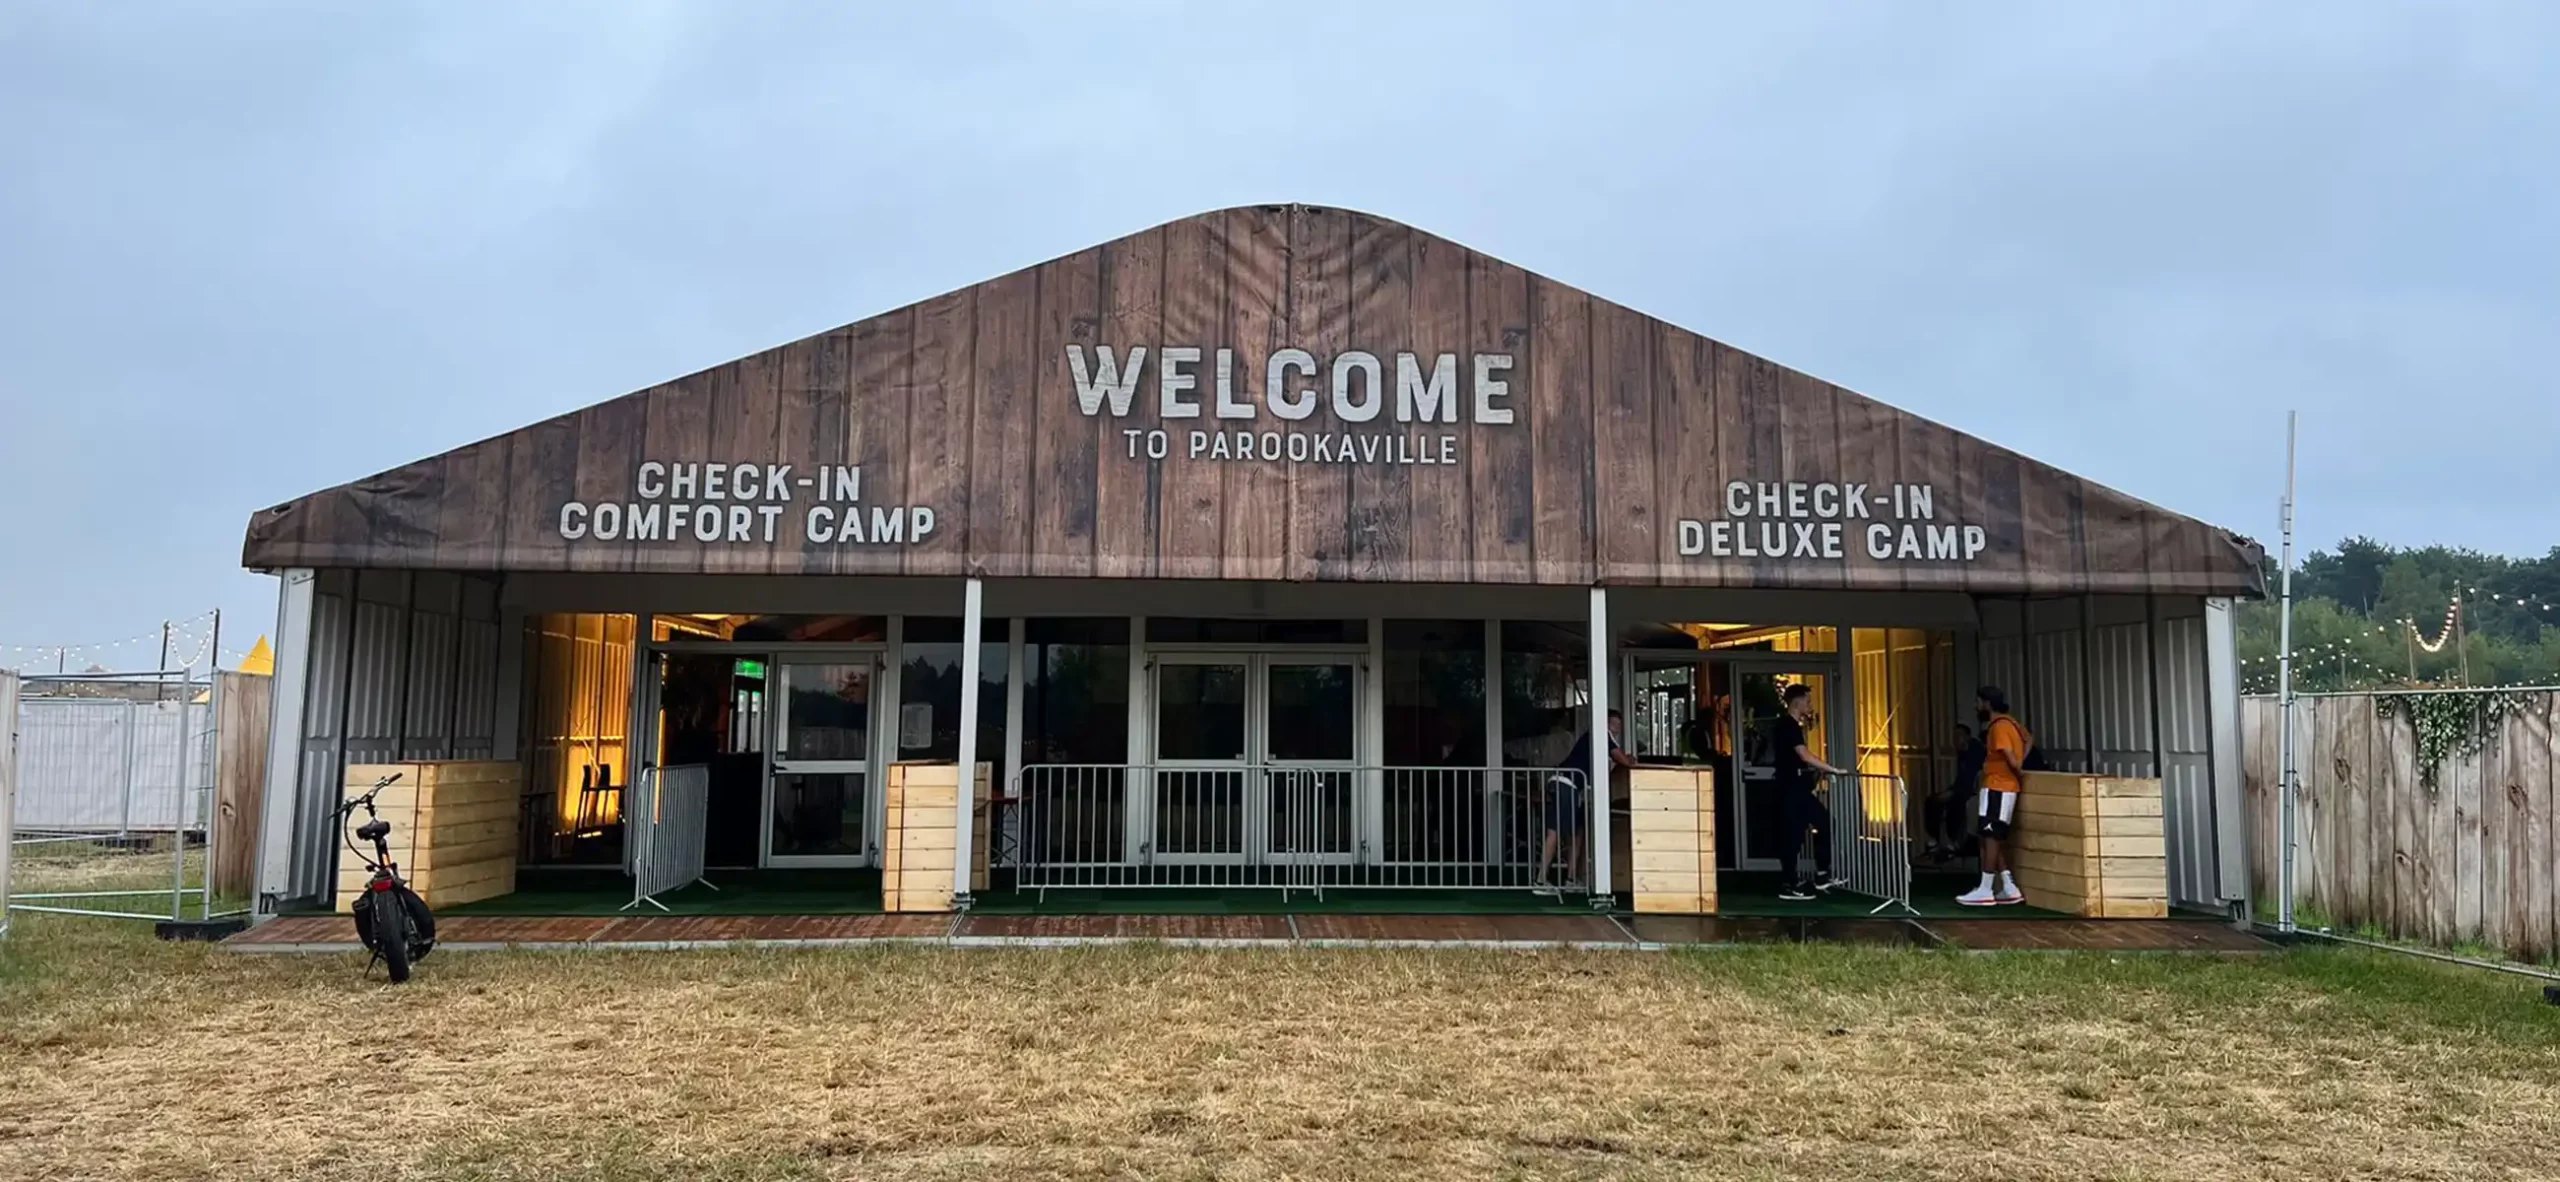 Festivalzelt von Zeltverleih intersettle - Alu-Pavillon Zelthalle für Check-in der Festival-Camper - Eventzelte für Veranstalter und Agenturen